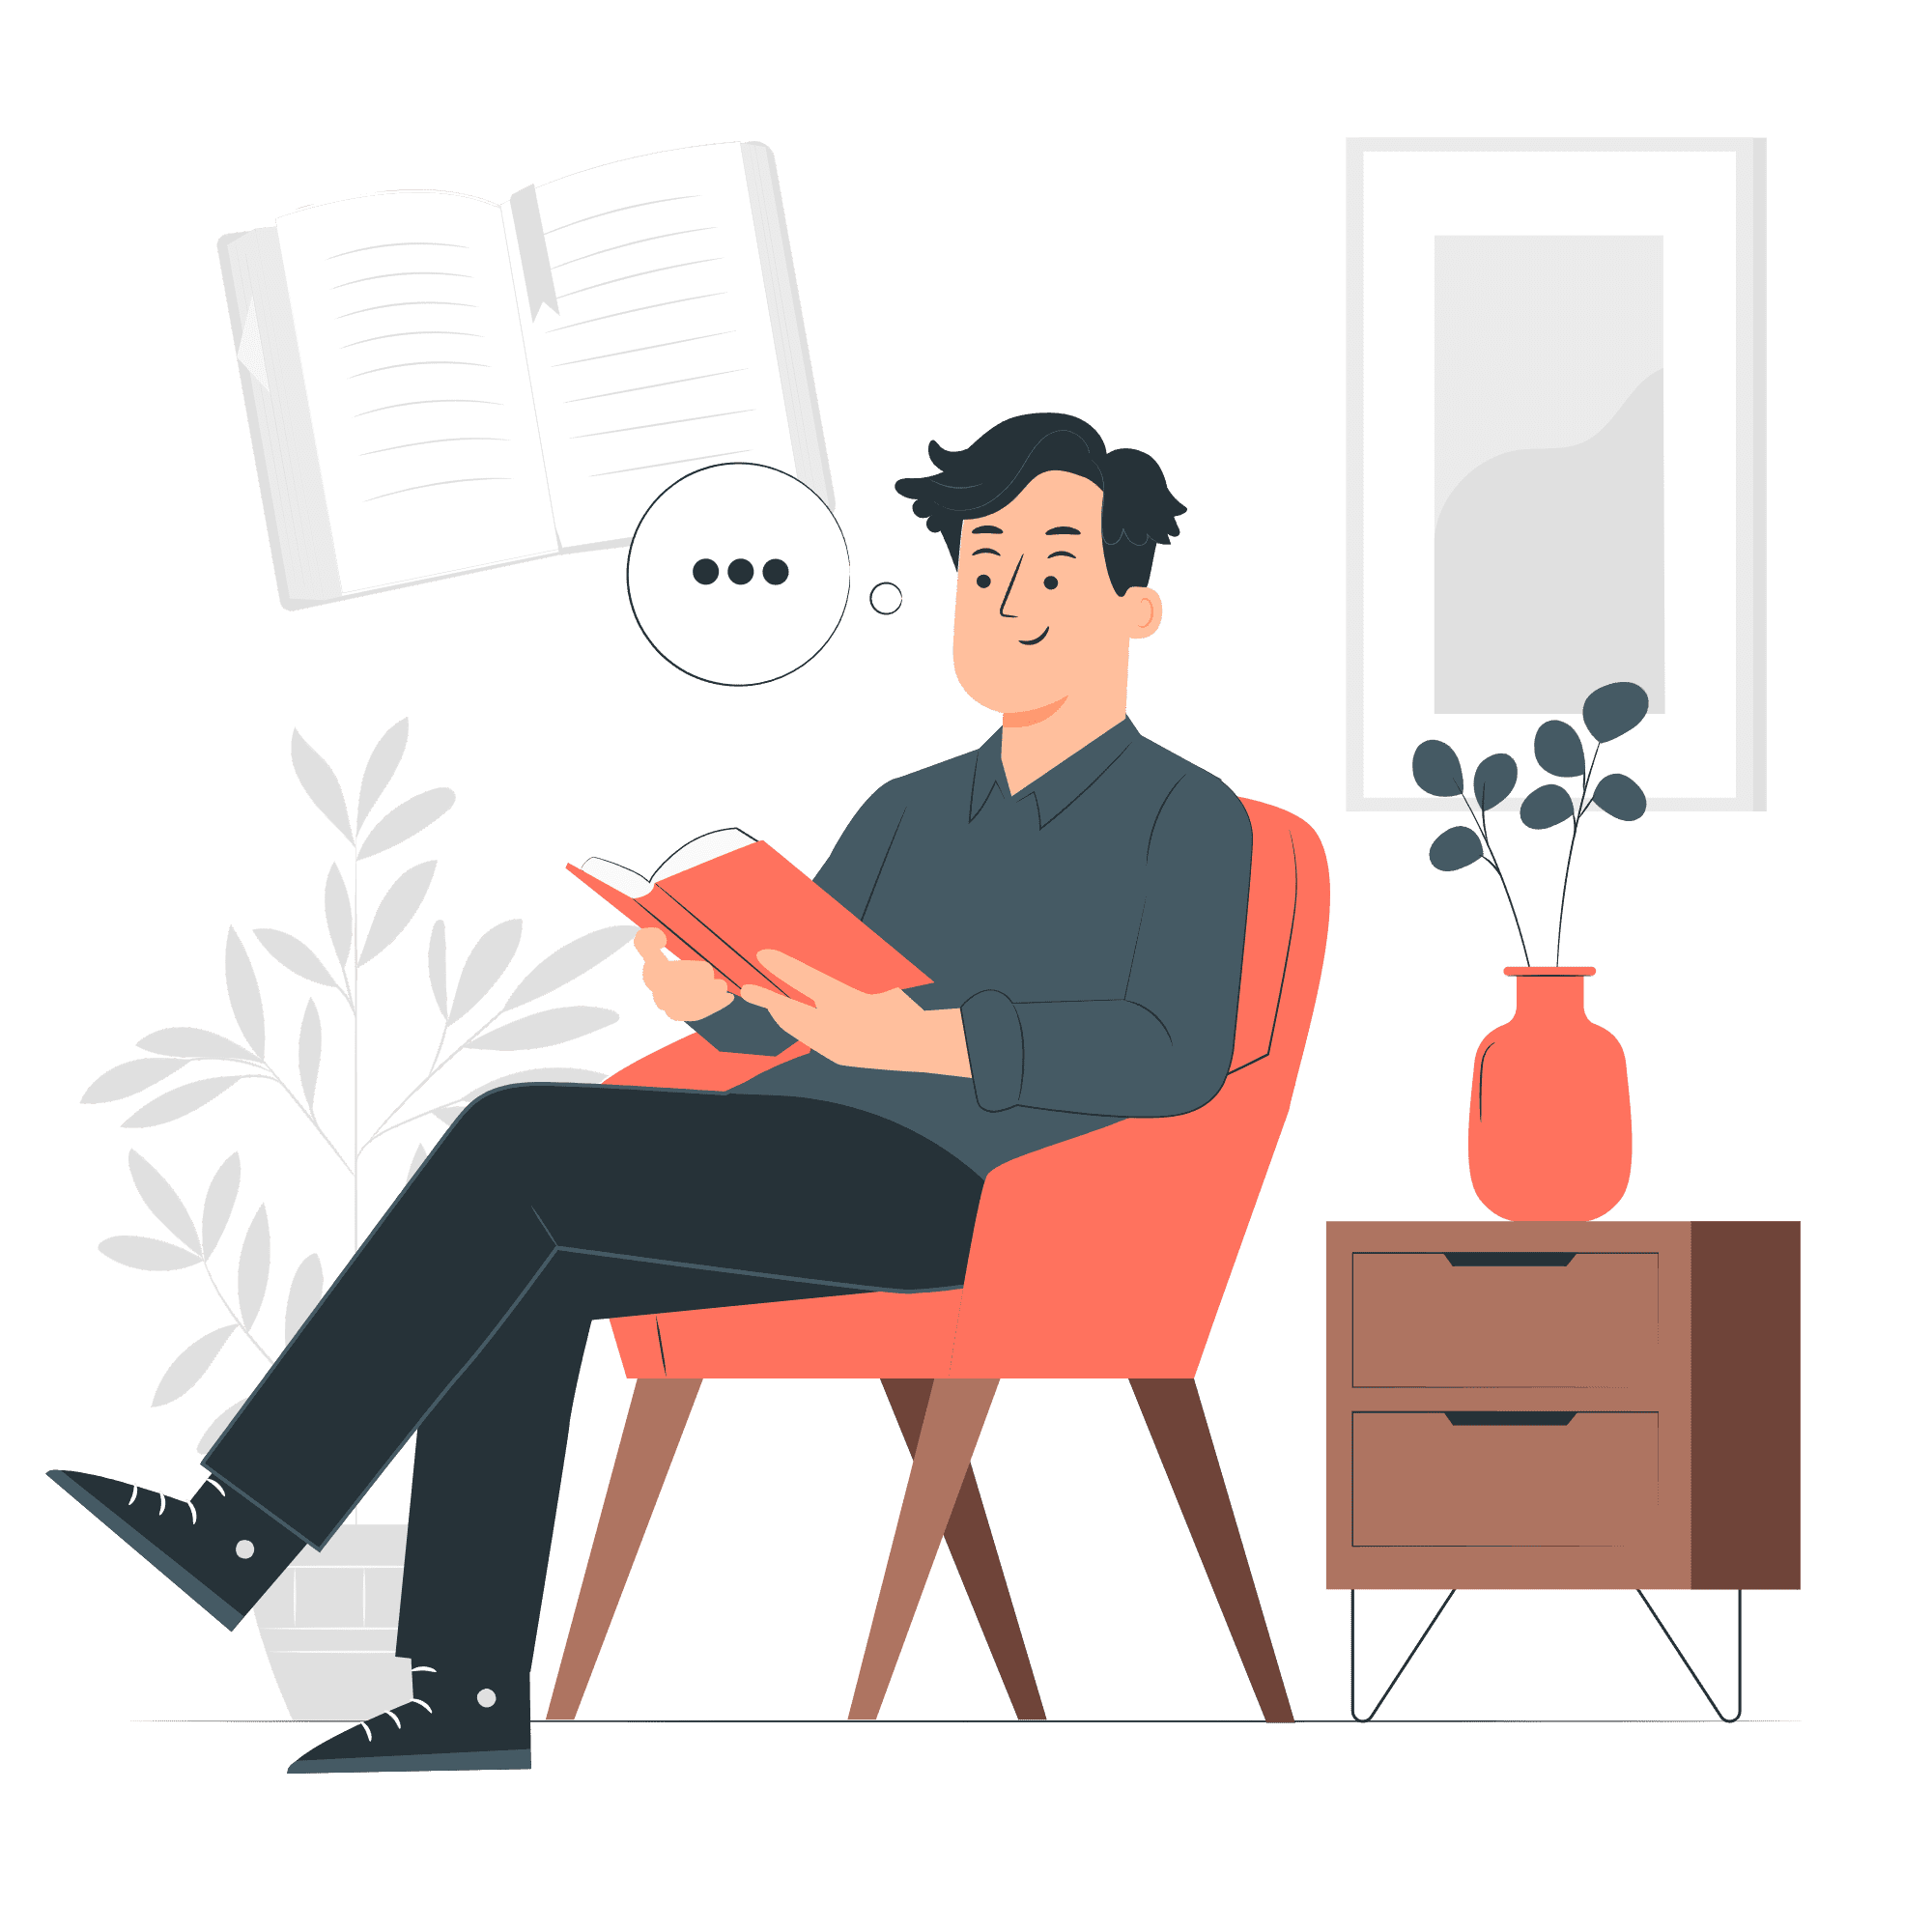 Iago Mota reading a book in a cozy room.